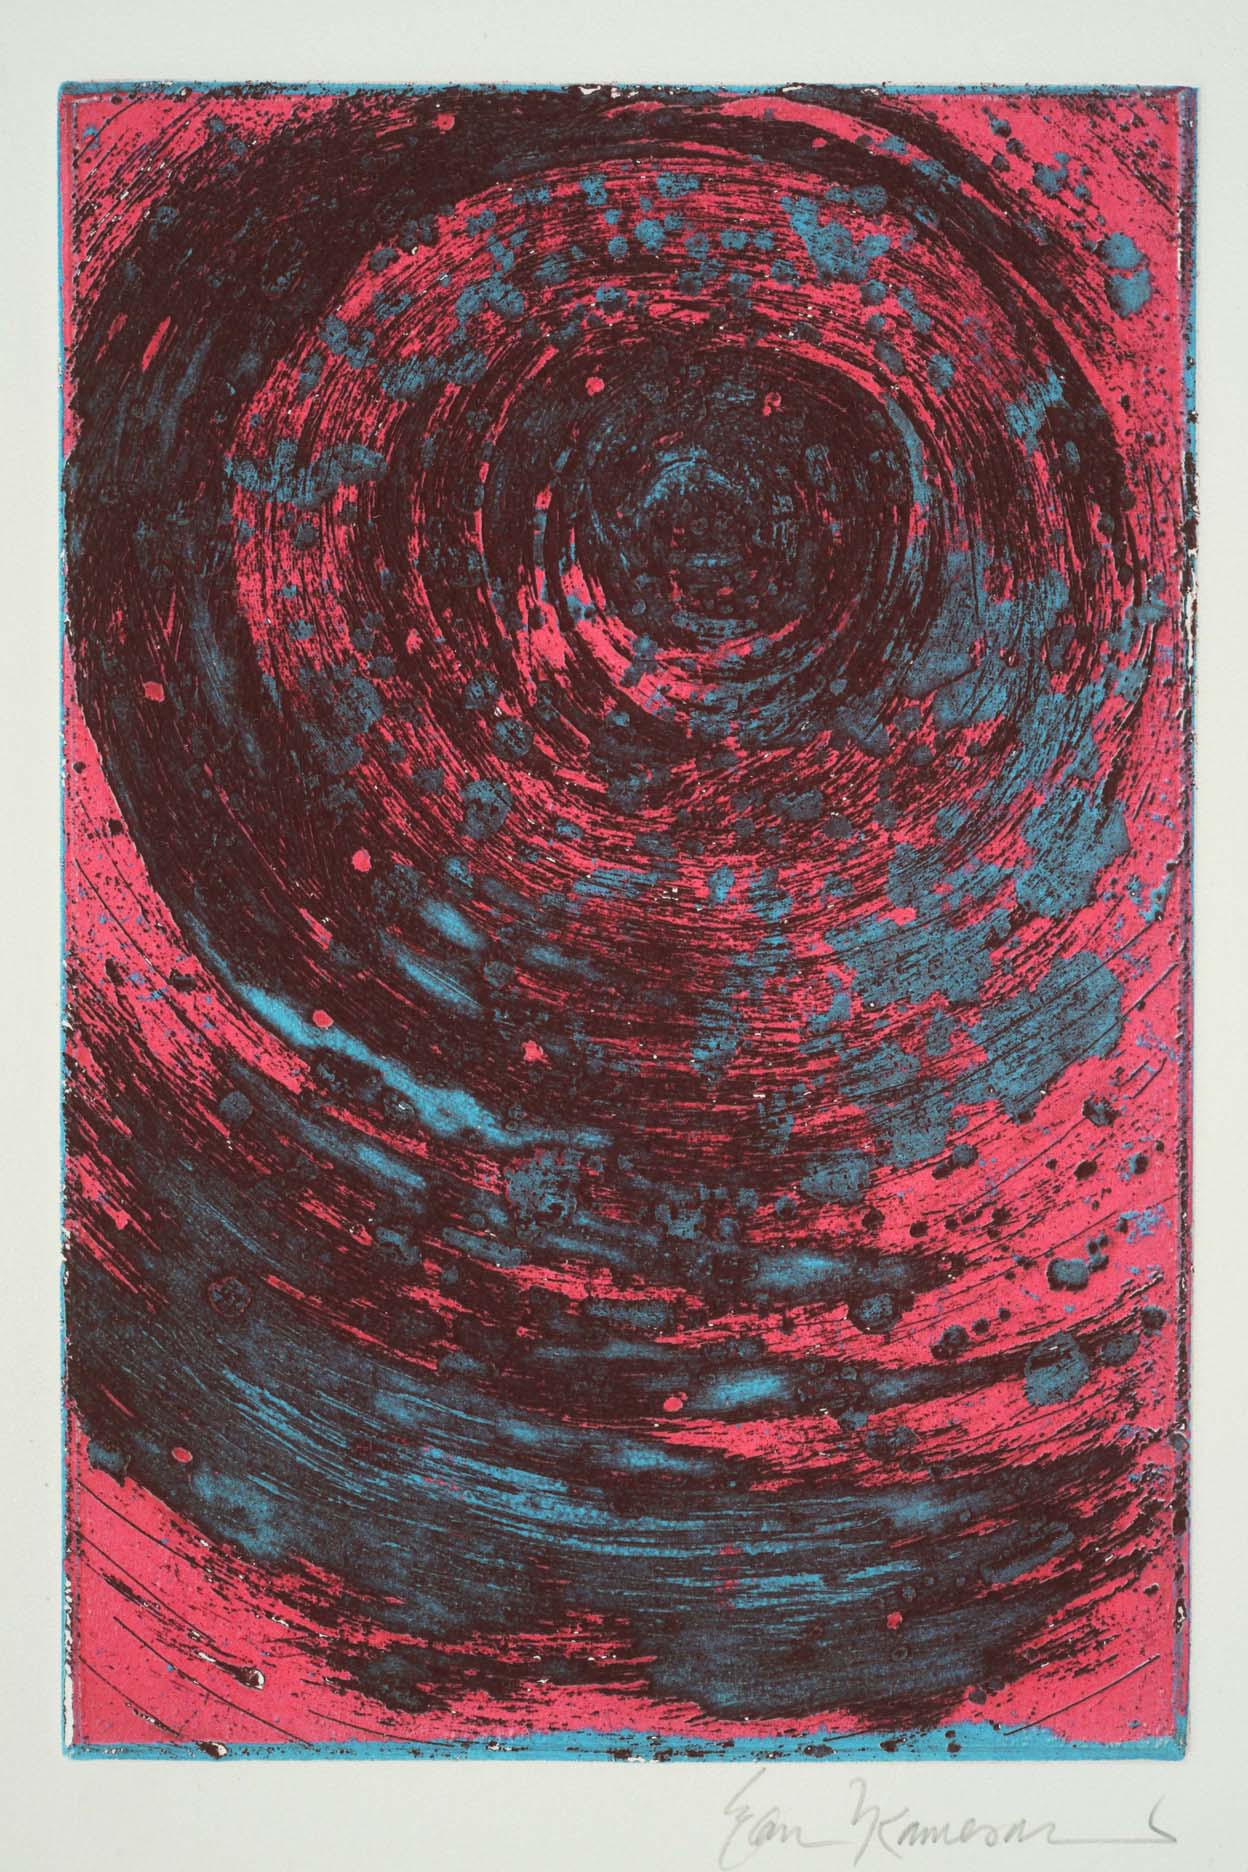 ‘Vortex’ Deep Etched Multi-Color Viscosity Intaglio Print (2017)